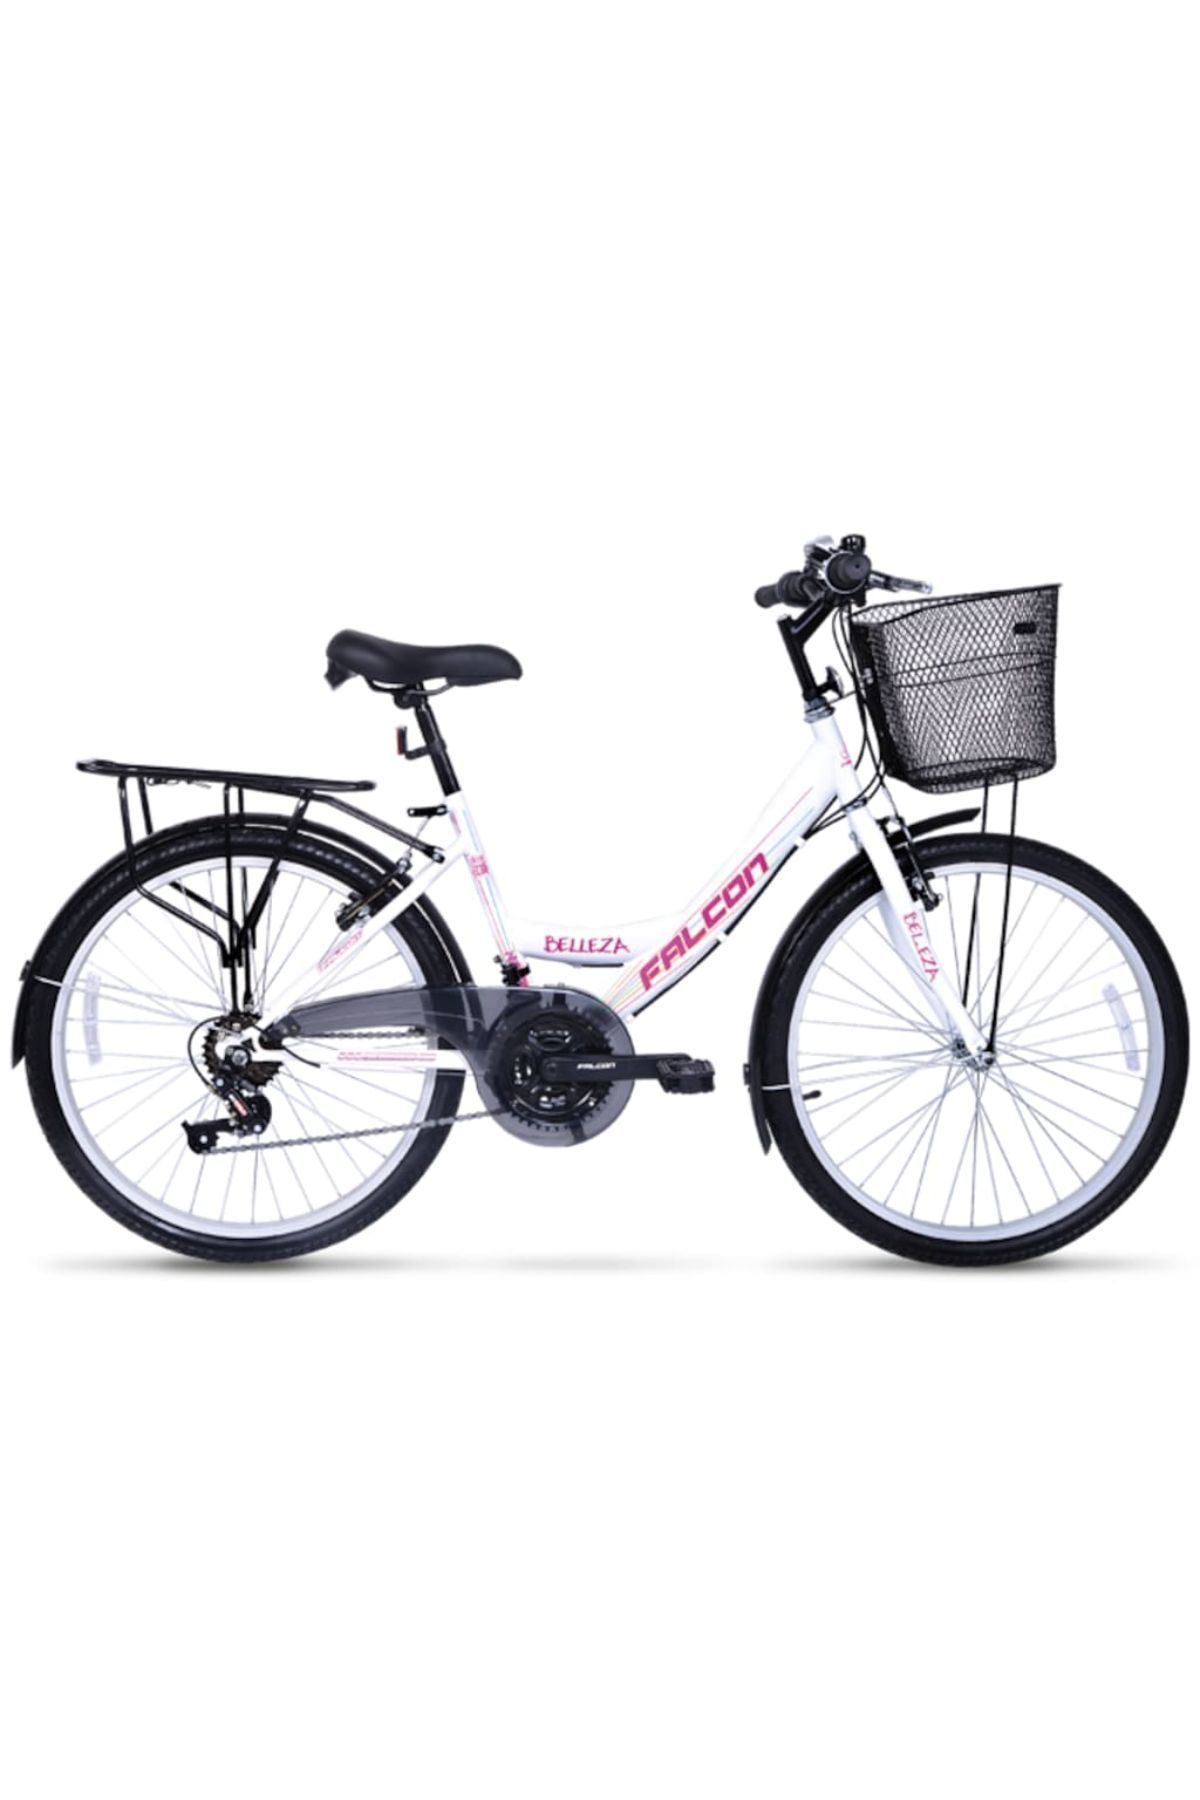 Kartal Bike Falcon Belleza 24 Jant Şehir Bisikleti 2019 model BEYAZ